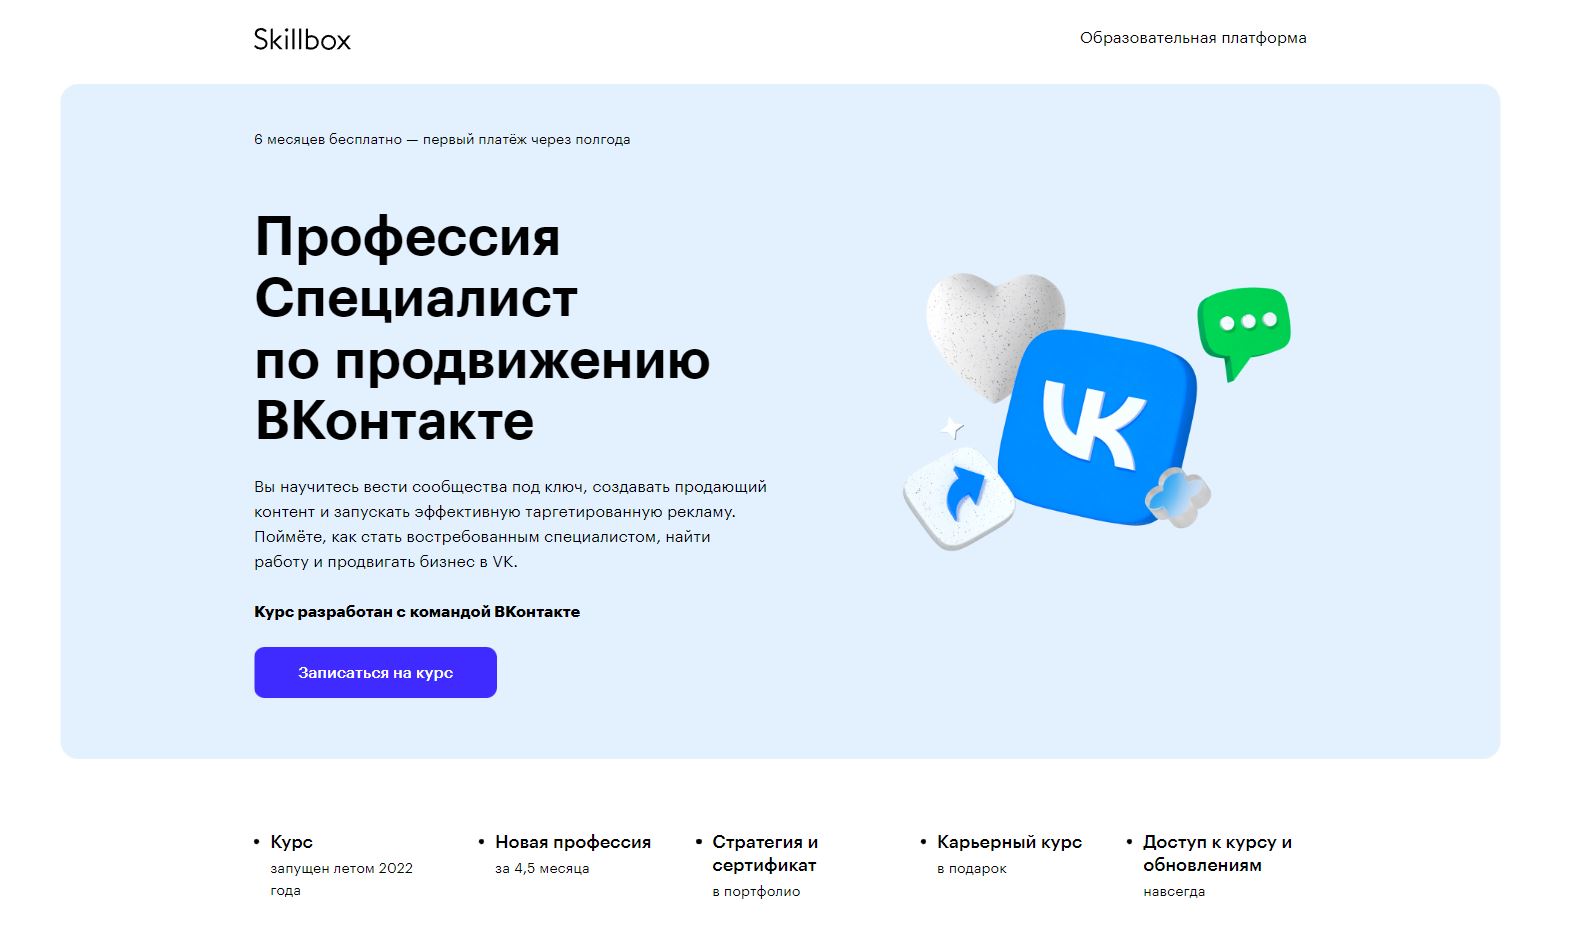 ТОП-10 онлайн-курсов по таргетированной рекламе во Вконтакте 2023 - Skillbox. «Профессия Специалист по продвижению ВКонтакте» - фото